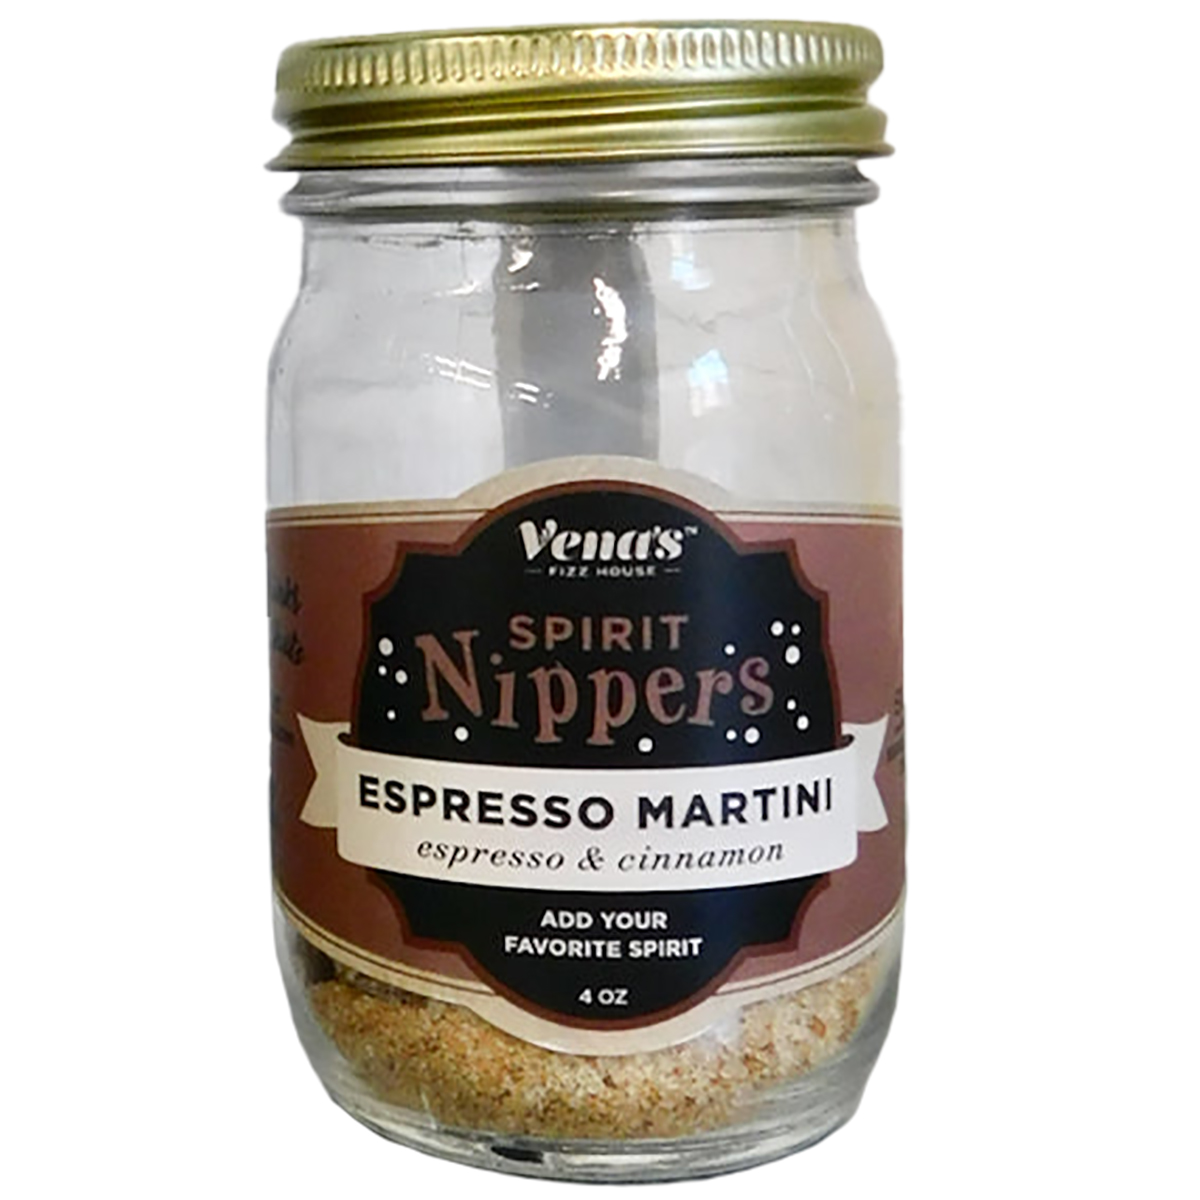 Vena's Fizz House Espresso Martini Spirit Nipper Infusion